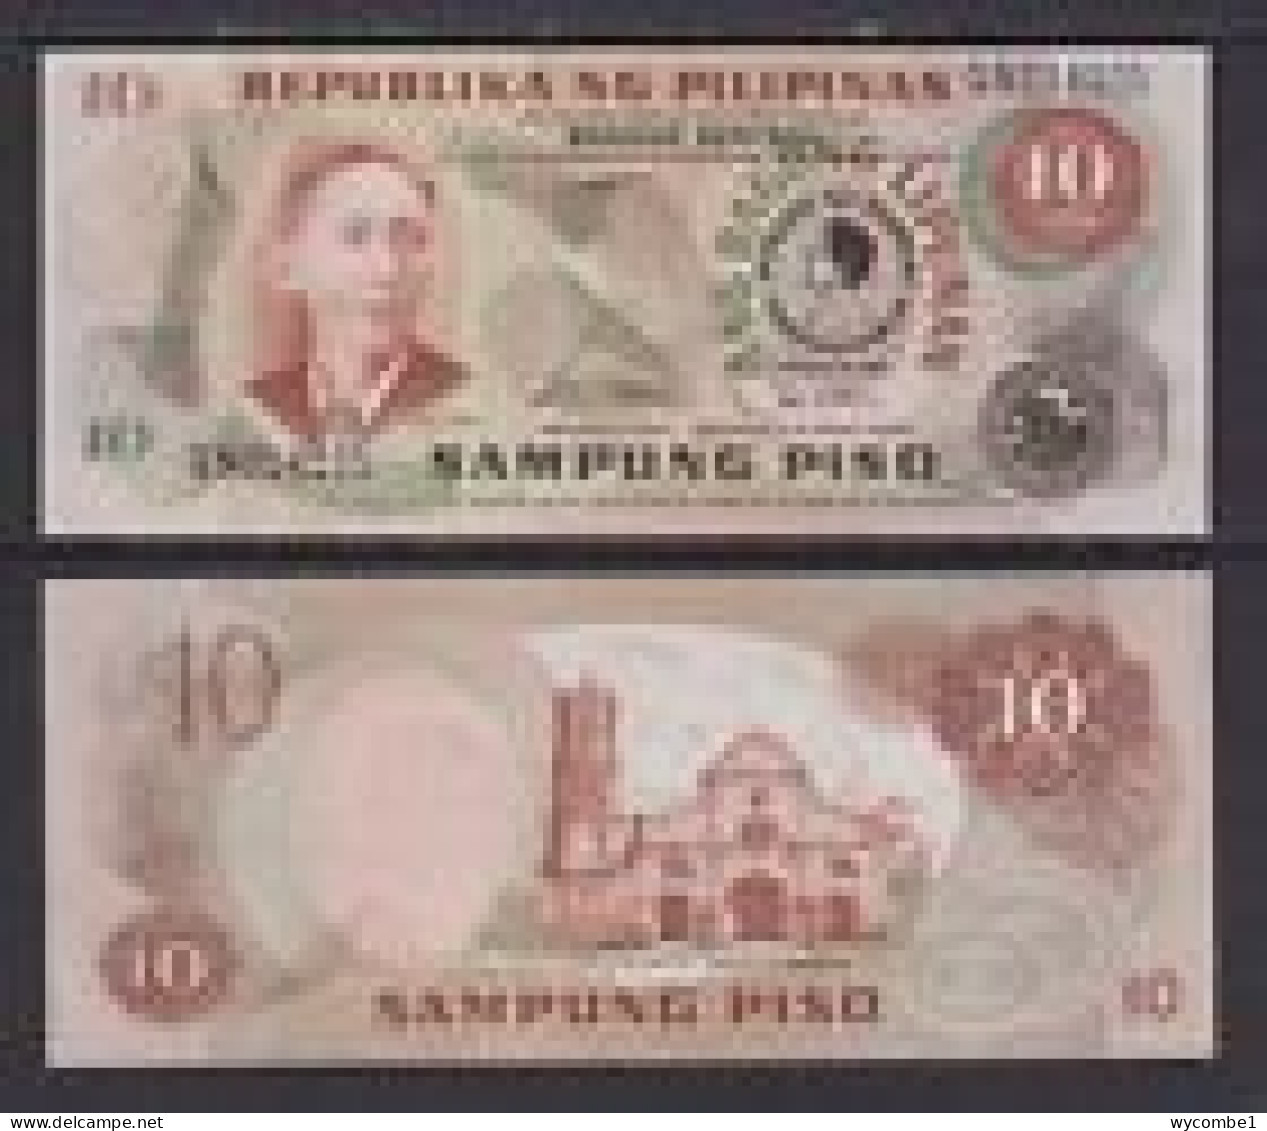 PHILIPPINES - 1981 10 Pesos UNC - Filipinas